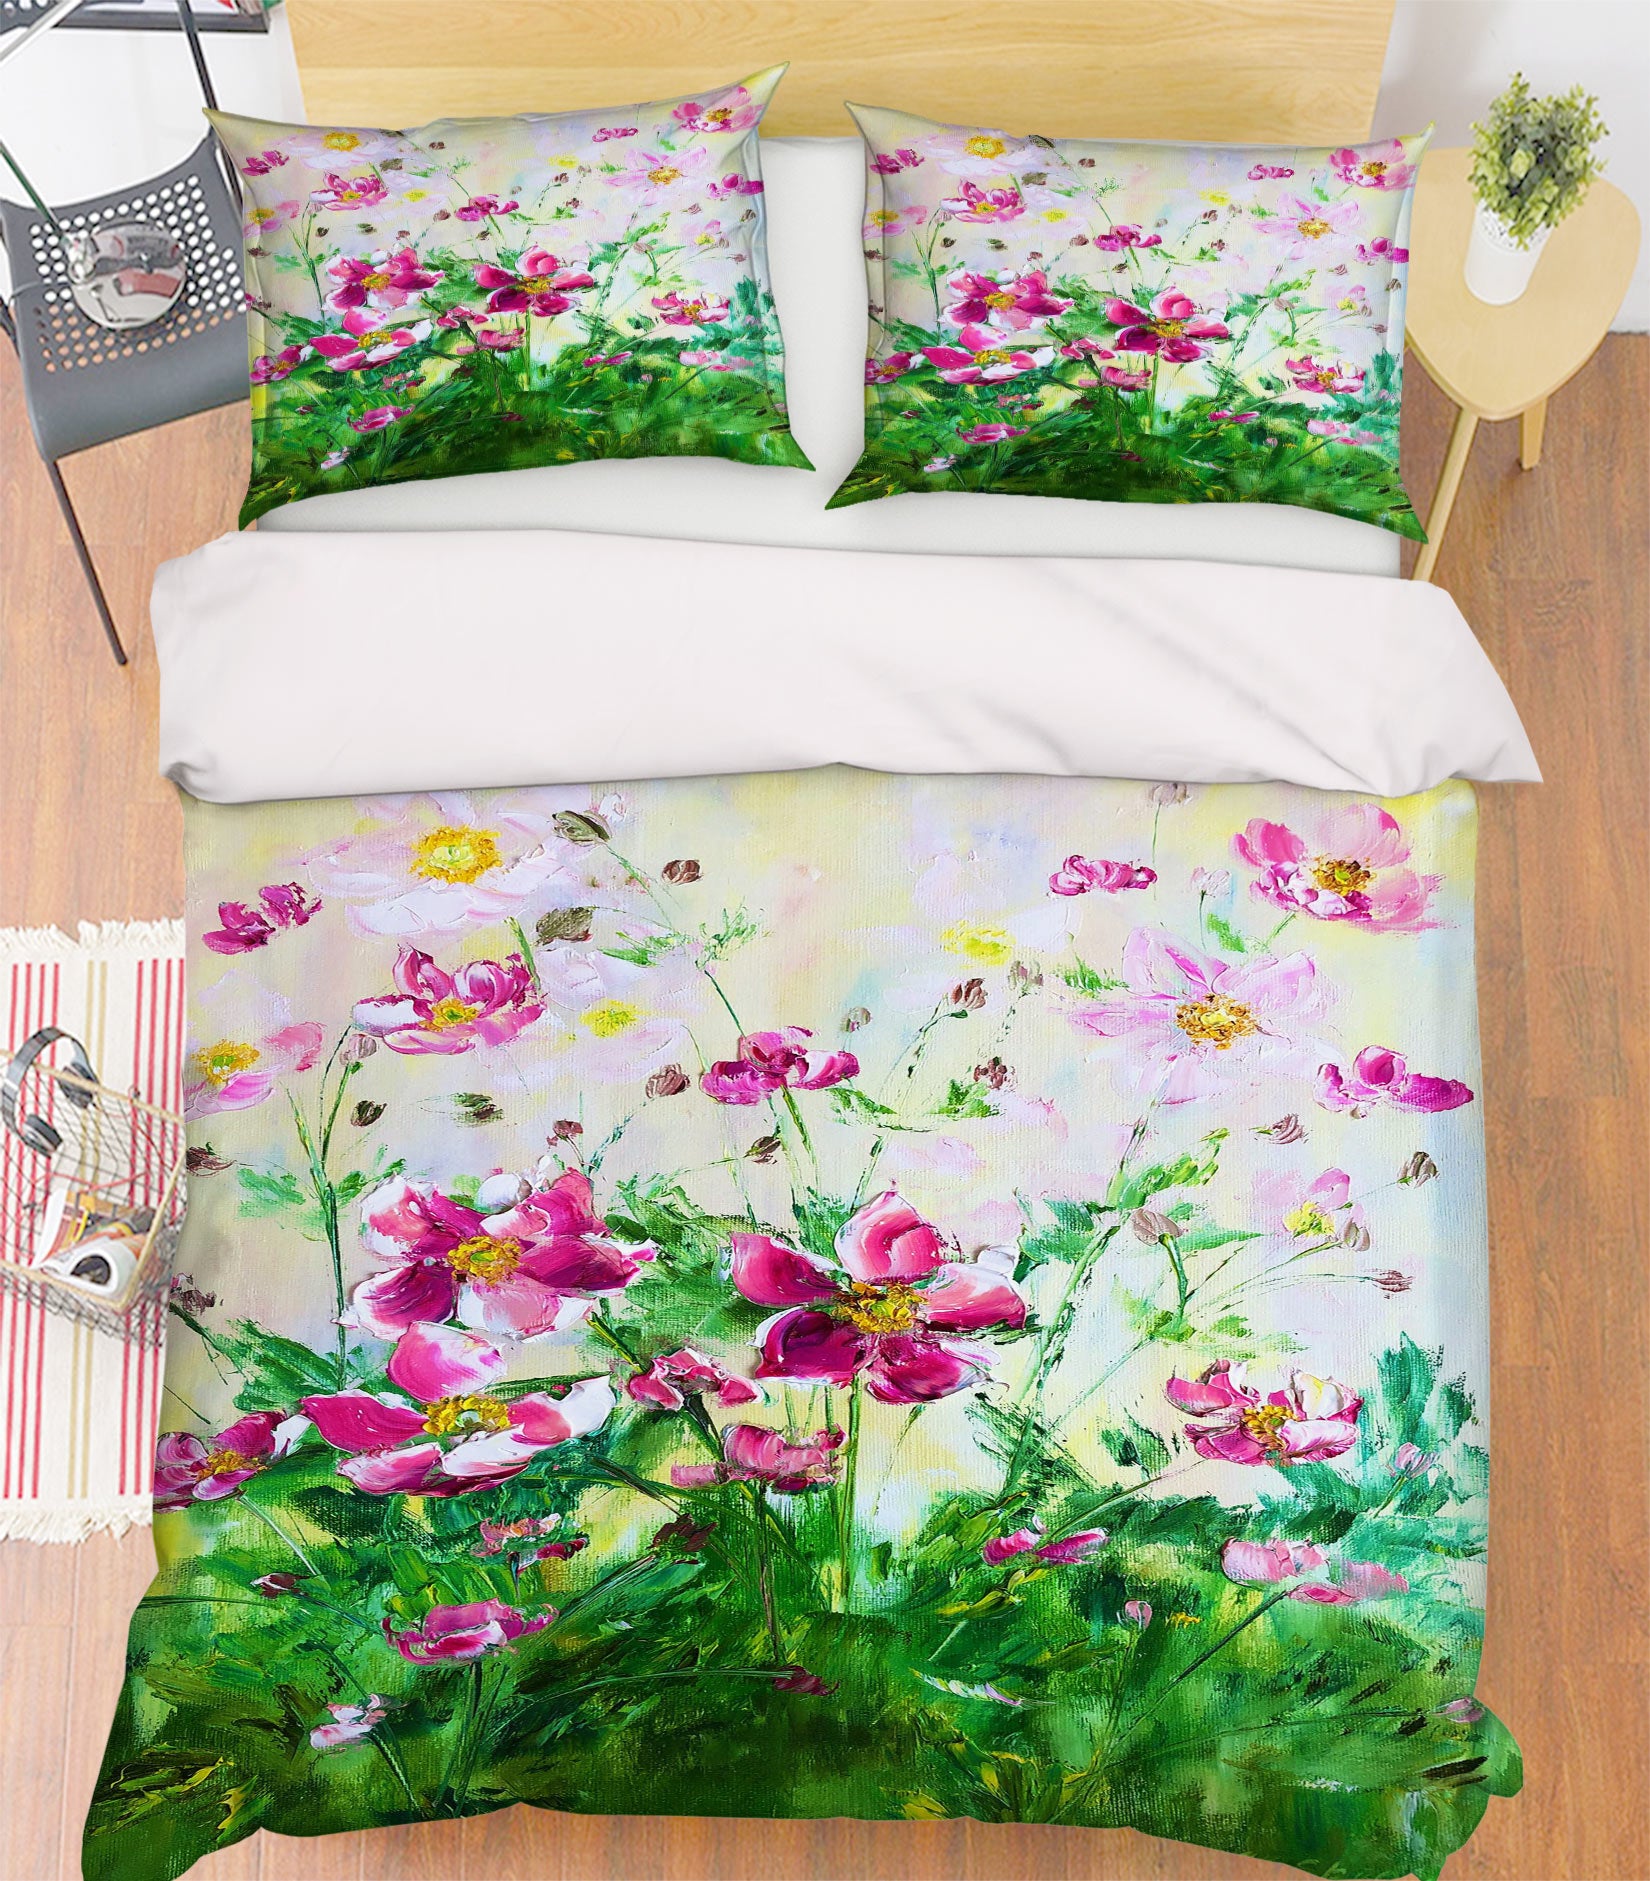 3D Pink Garden 469 Skromova Marina Bedding Bed Pillowcases Quilt